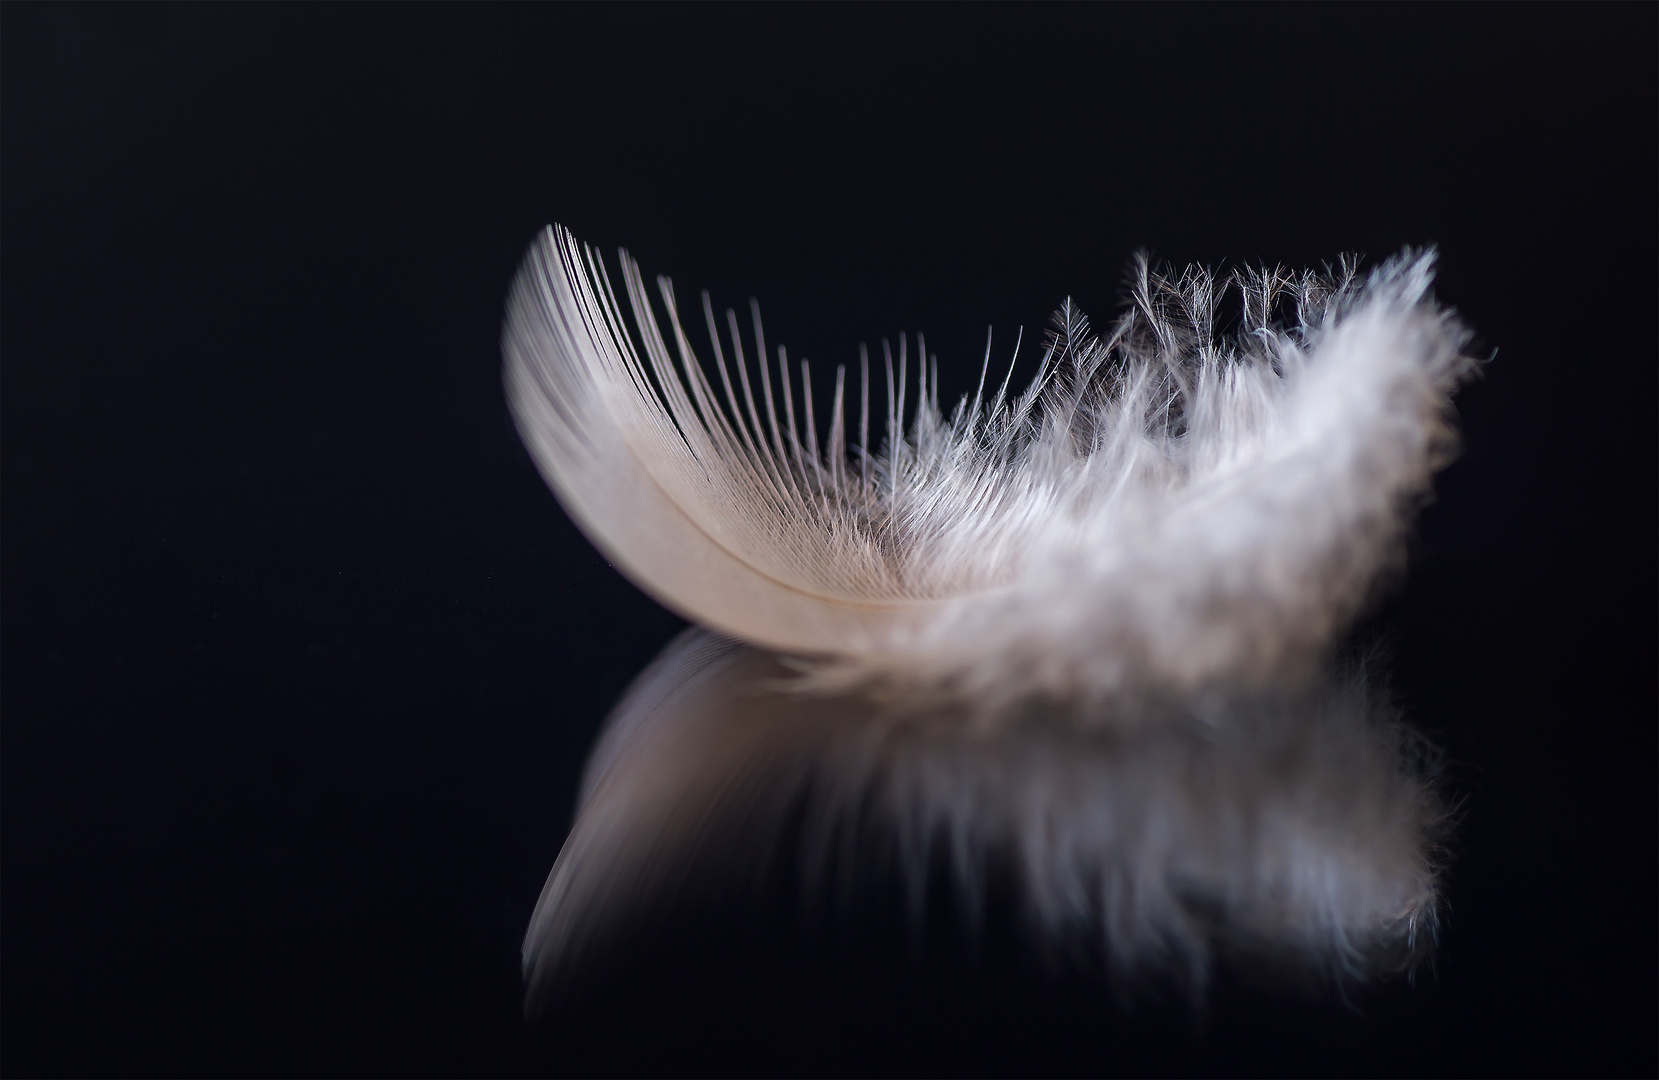 The little Feather "Die kleine Feder"